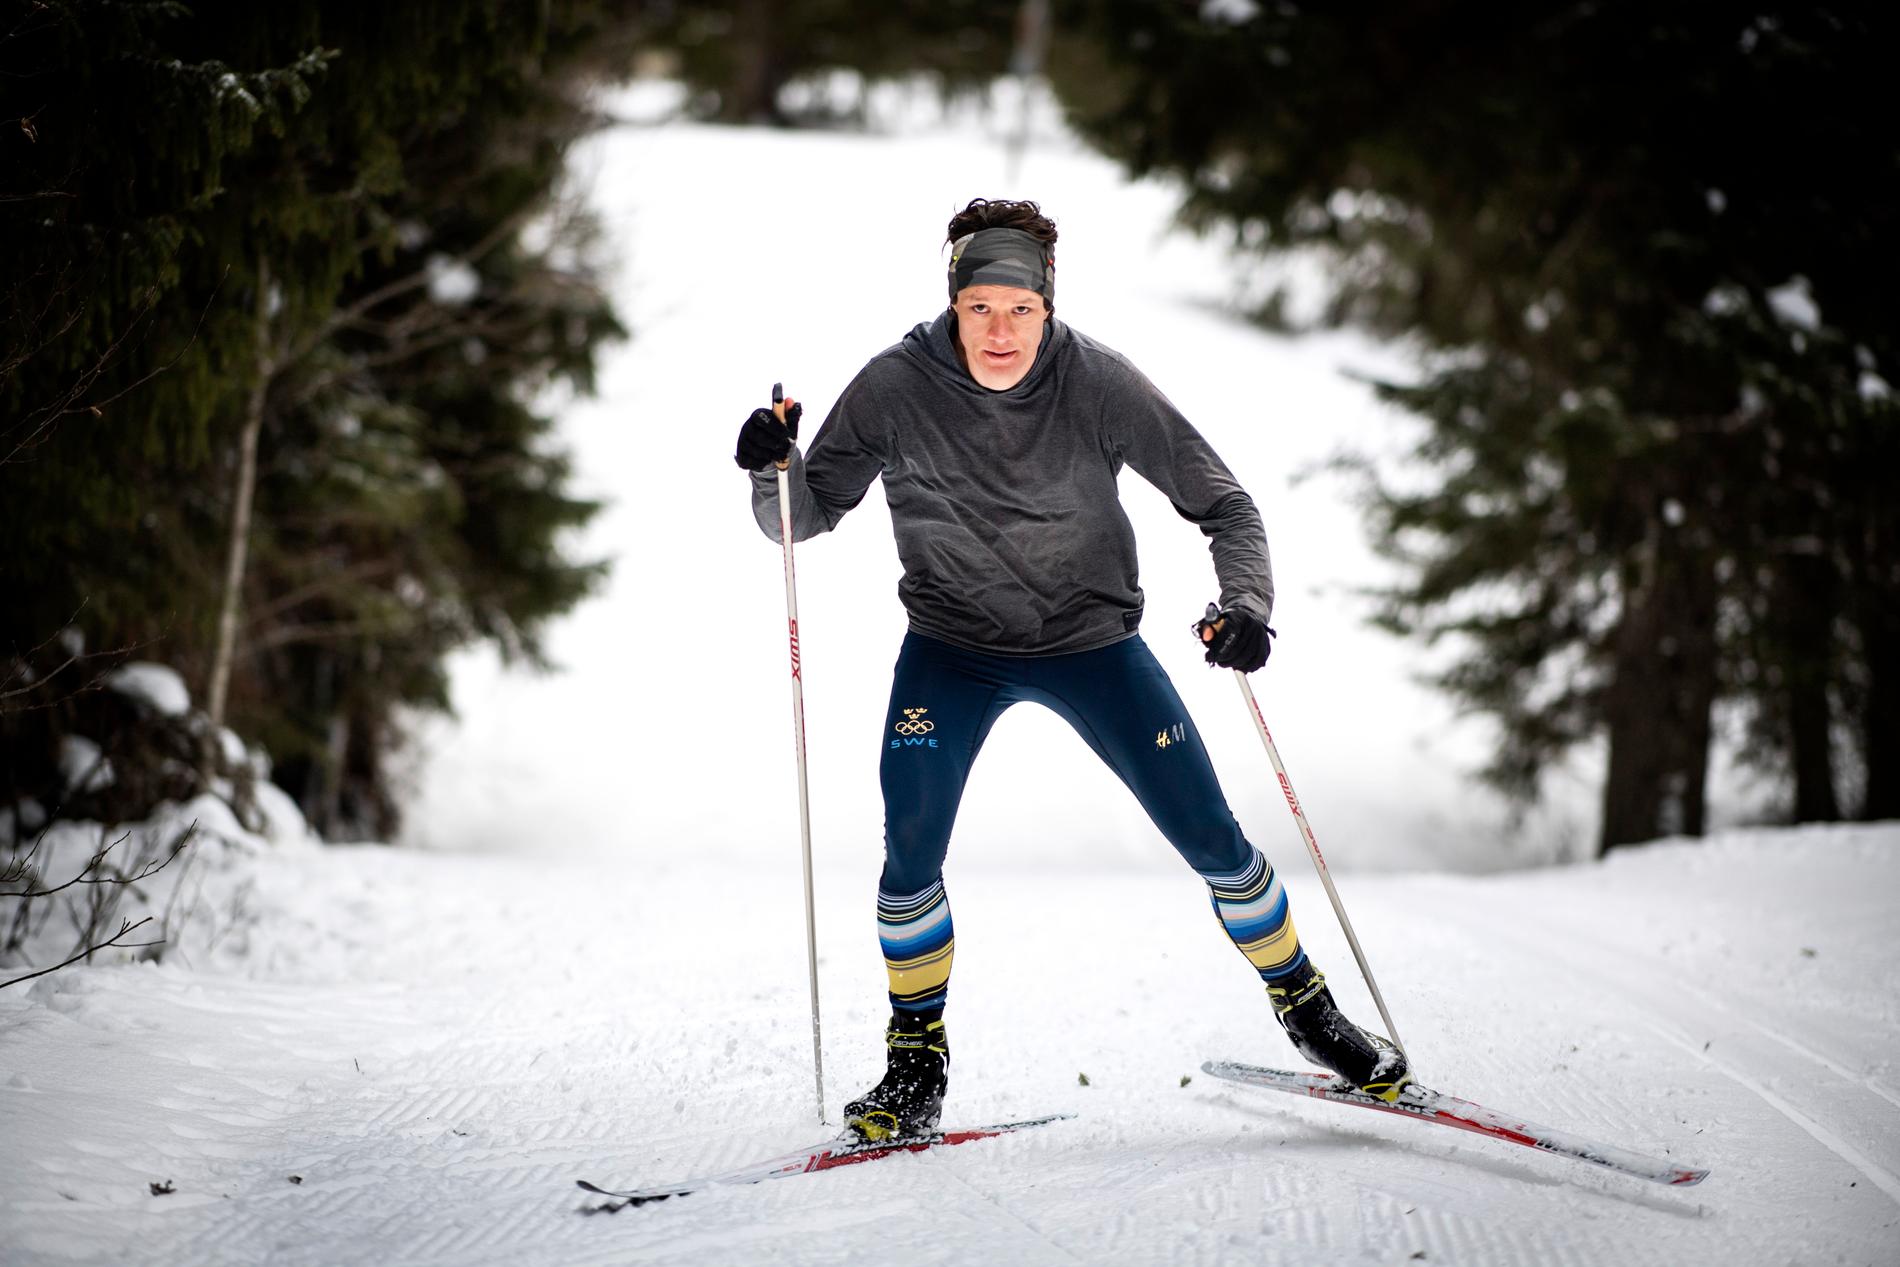 "Min plan är att vara bäst på skridskor genom att åka skidor", säger Nils van der Poel med flåset i halsen.